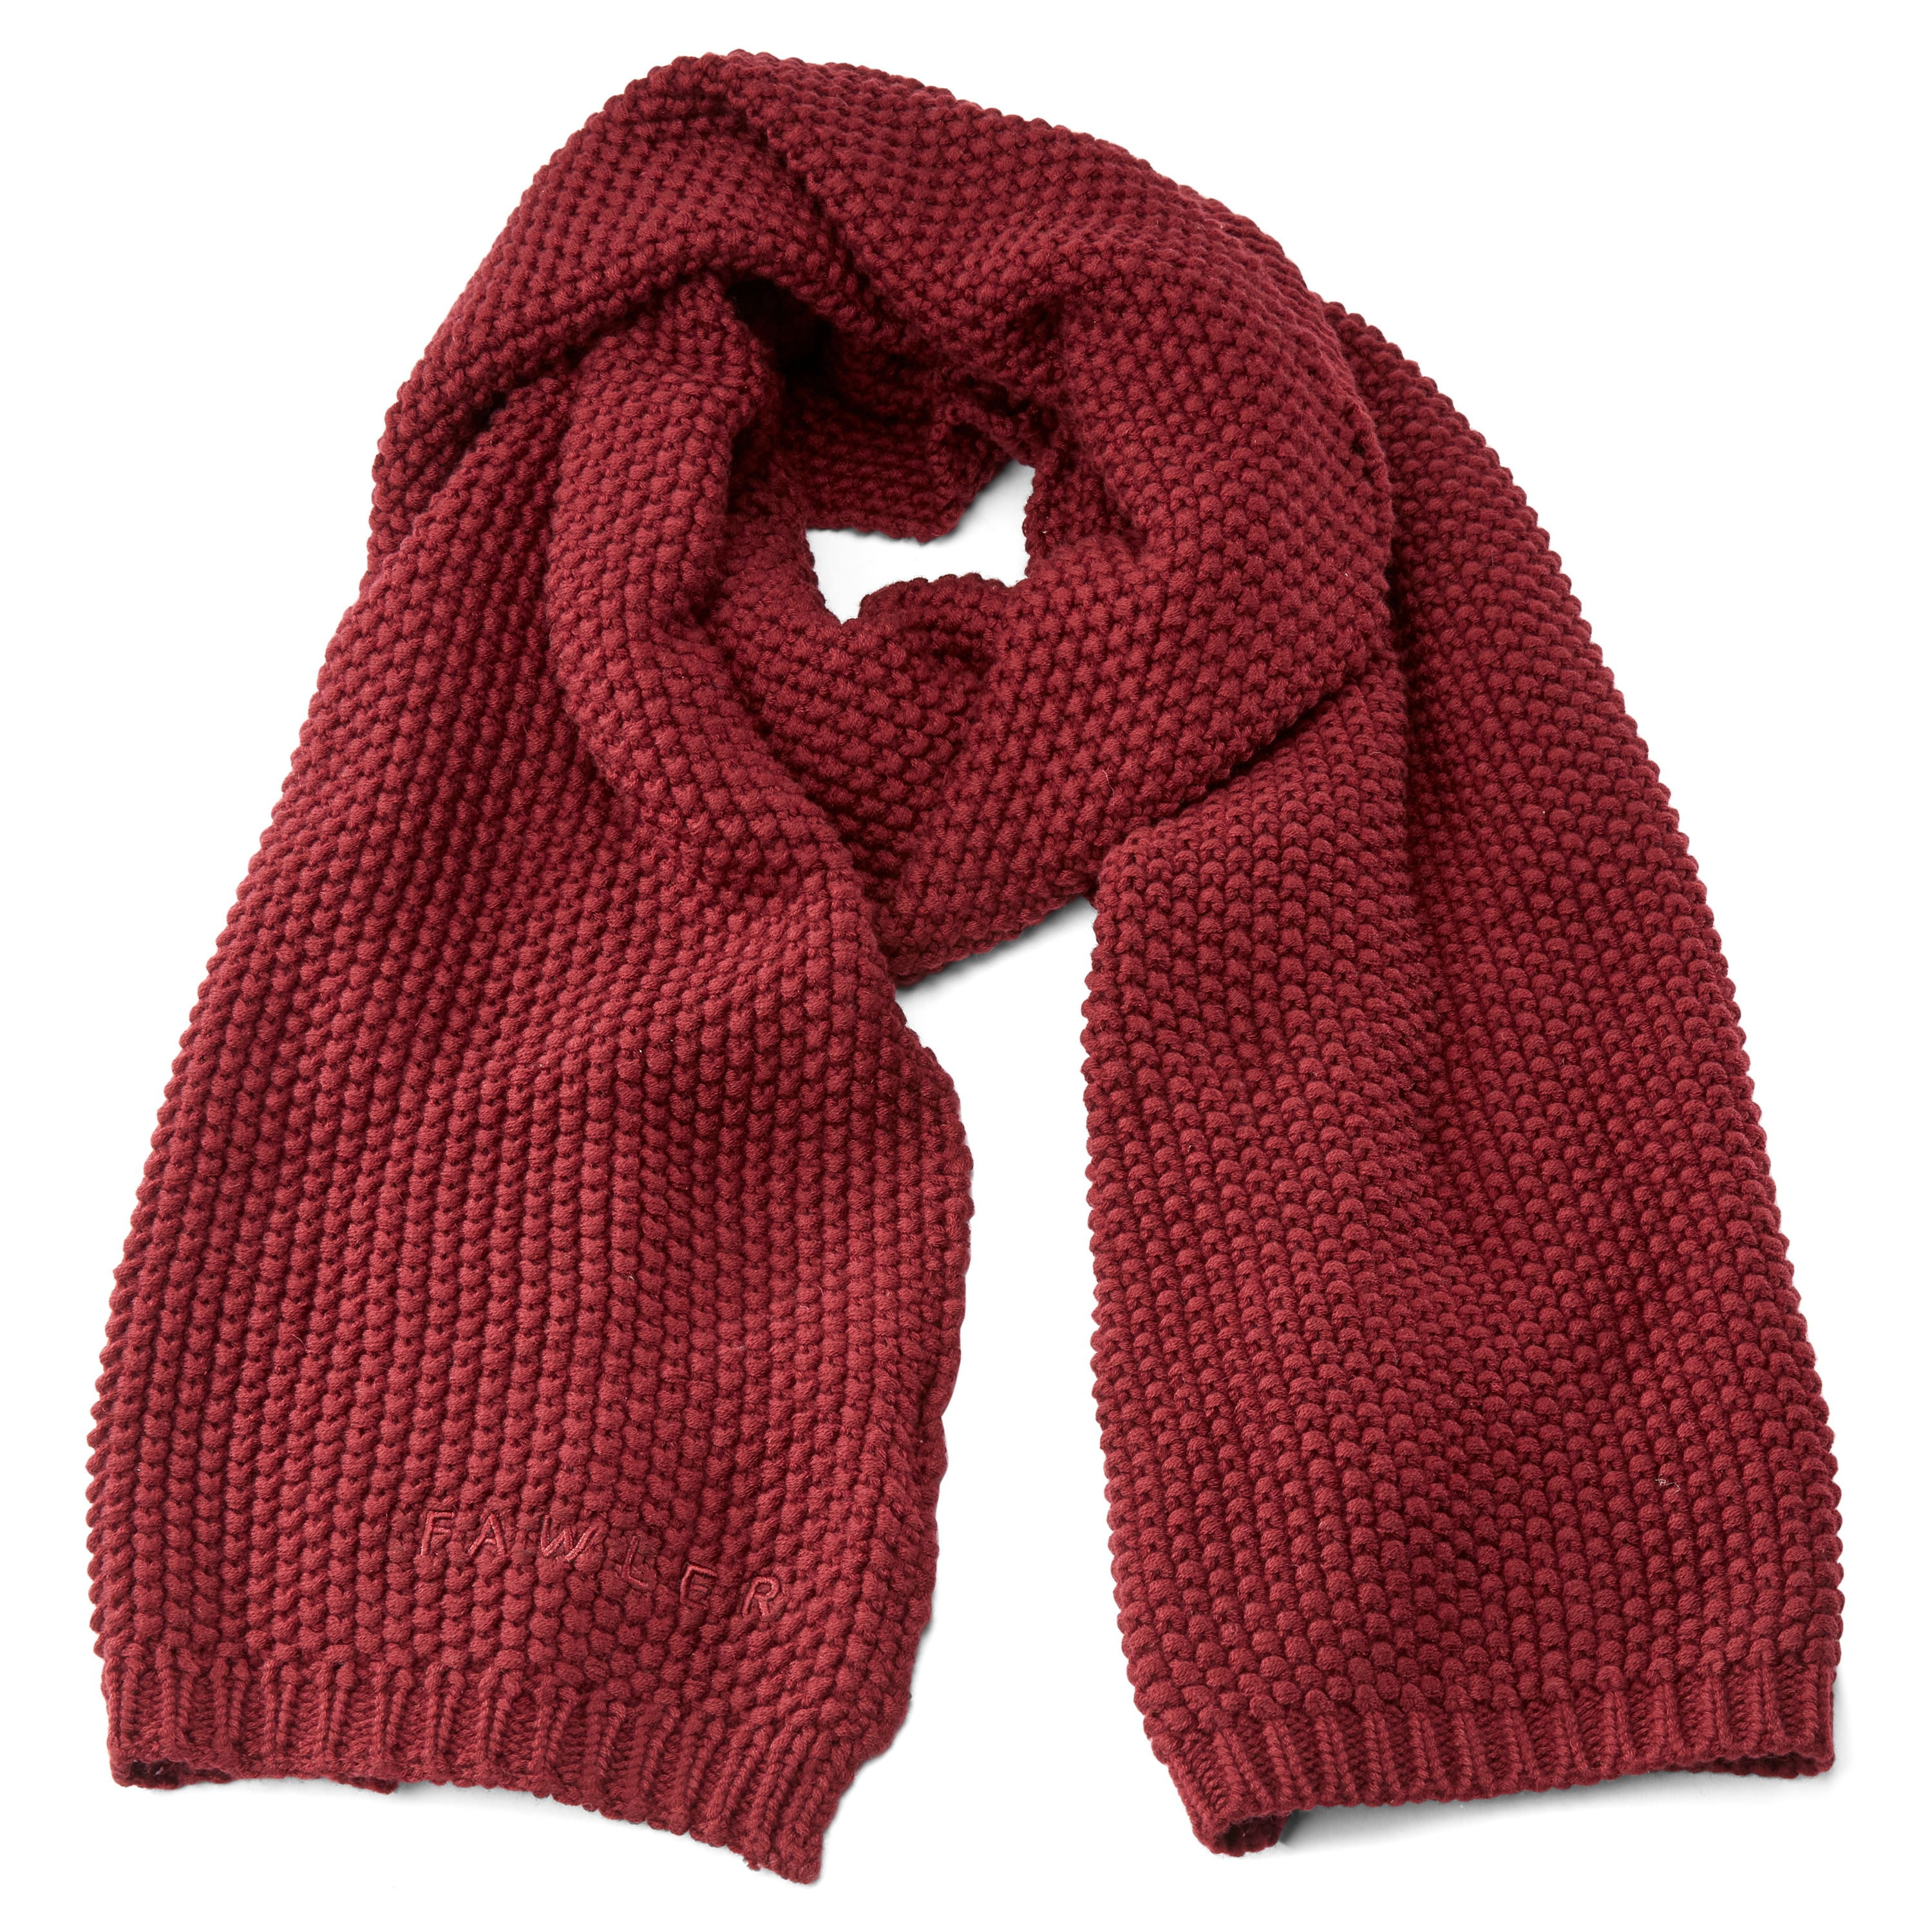 Inválido Hombre A merced de Las bufandas: 8 ideas geniales para usarlas